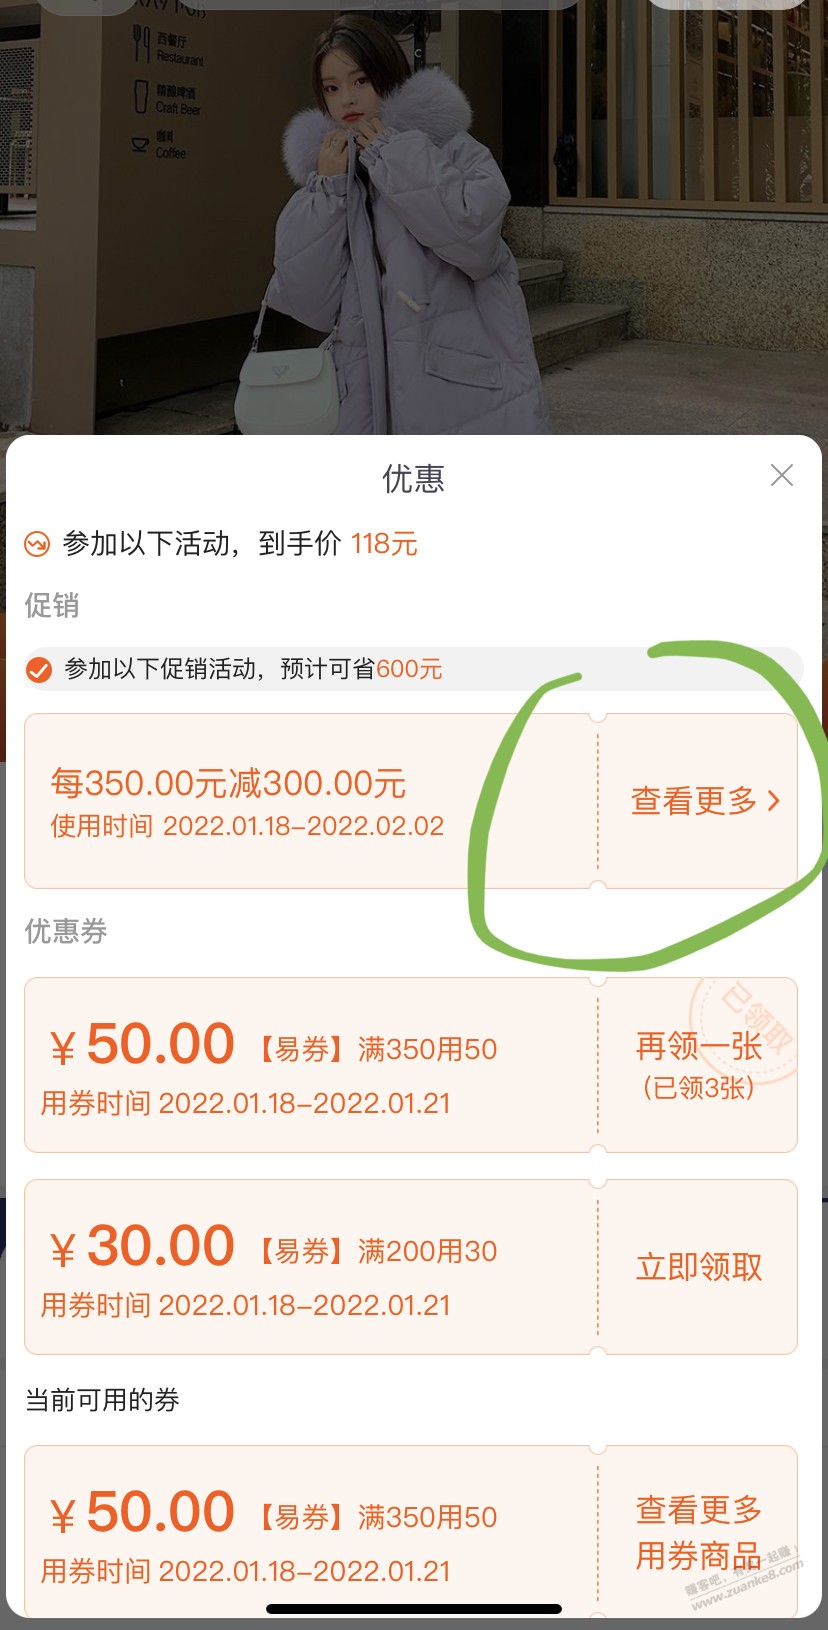 拉夏贝尔700-600挺便宜-惠小助(52huixz.com)